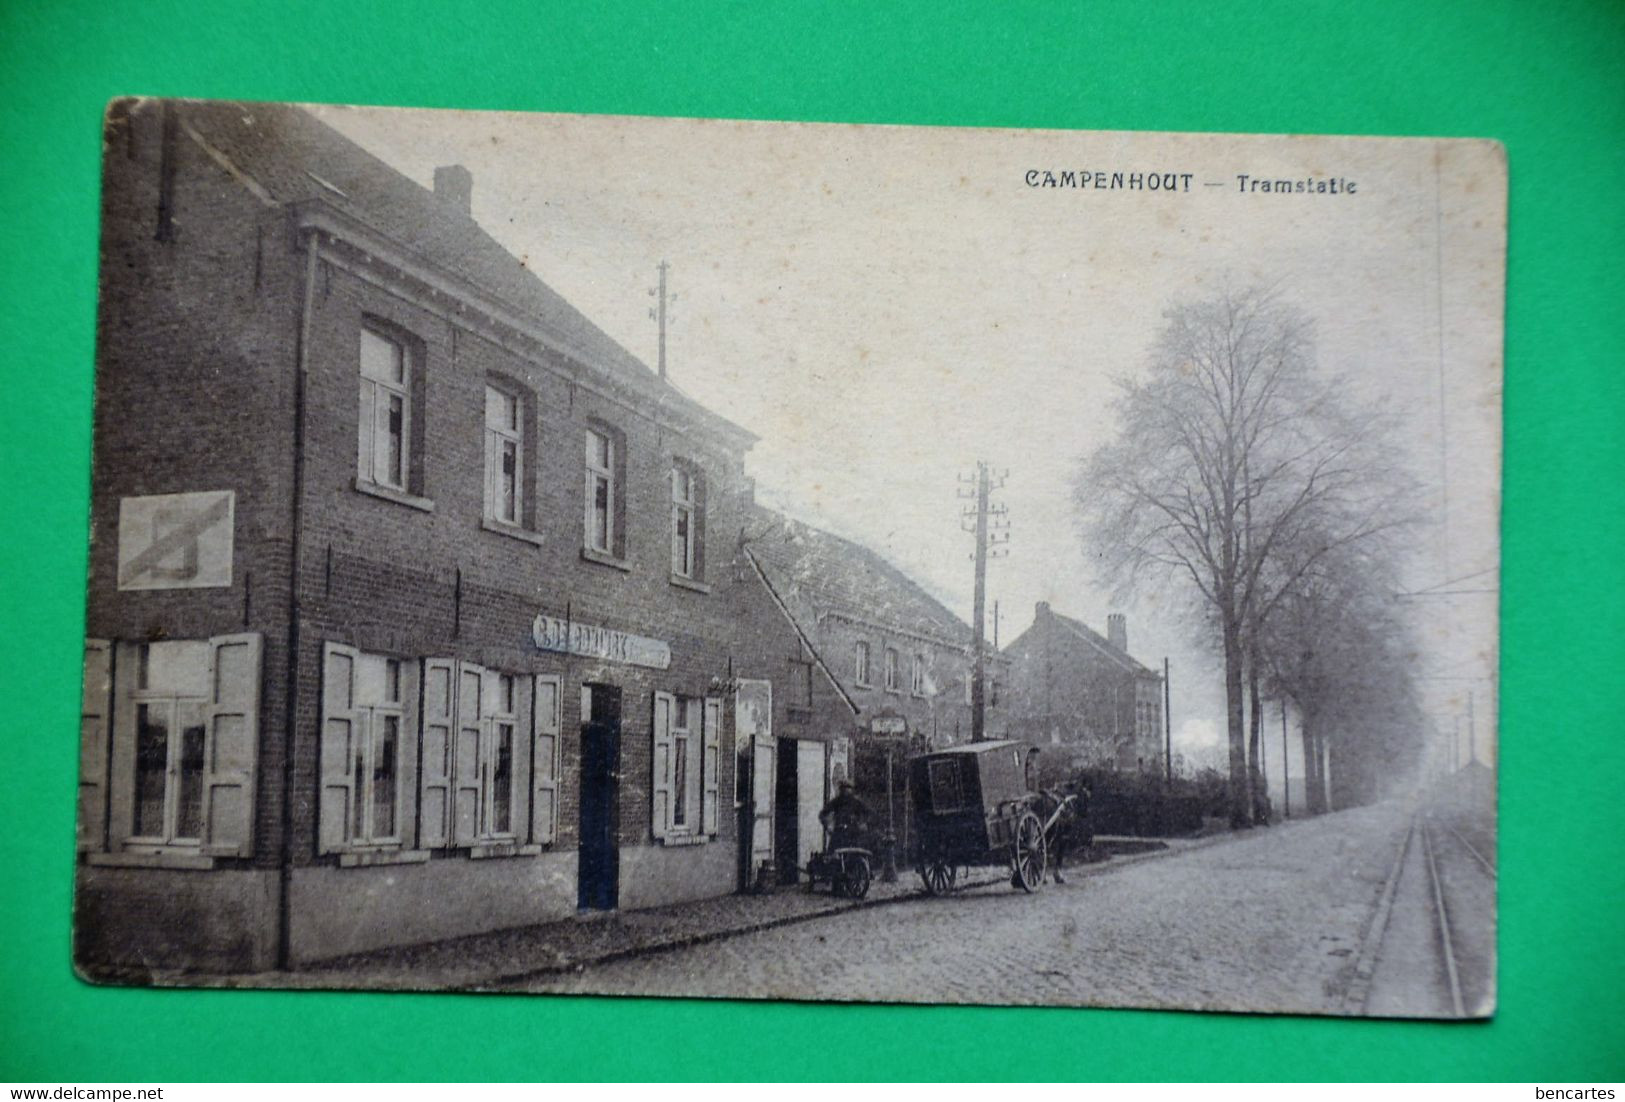 Campenhout 1928 : Tramstatie Animée Avec Calèche. RARE - Kampenhout